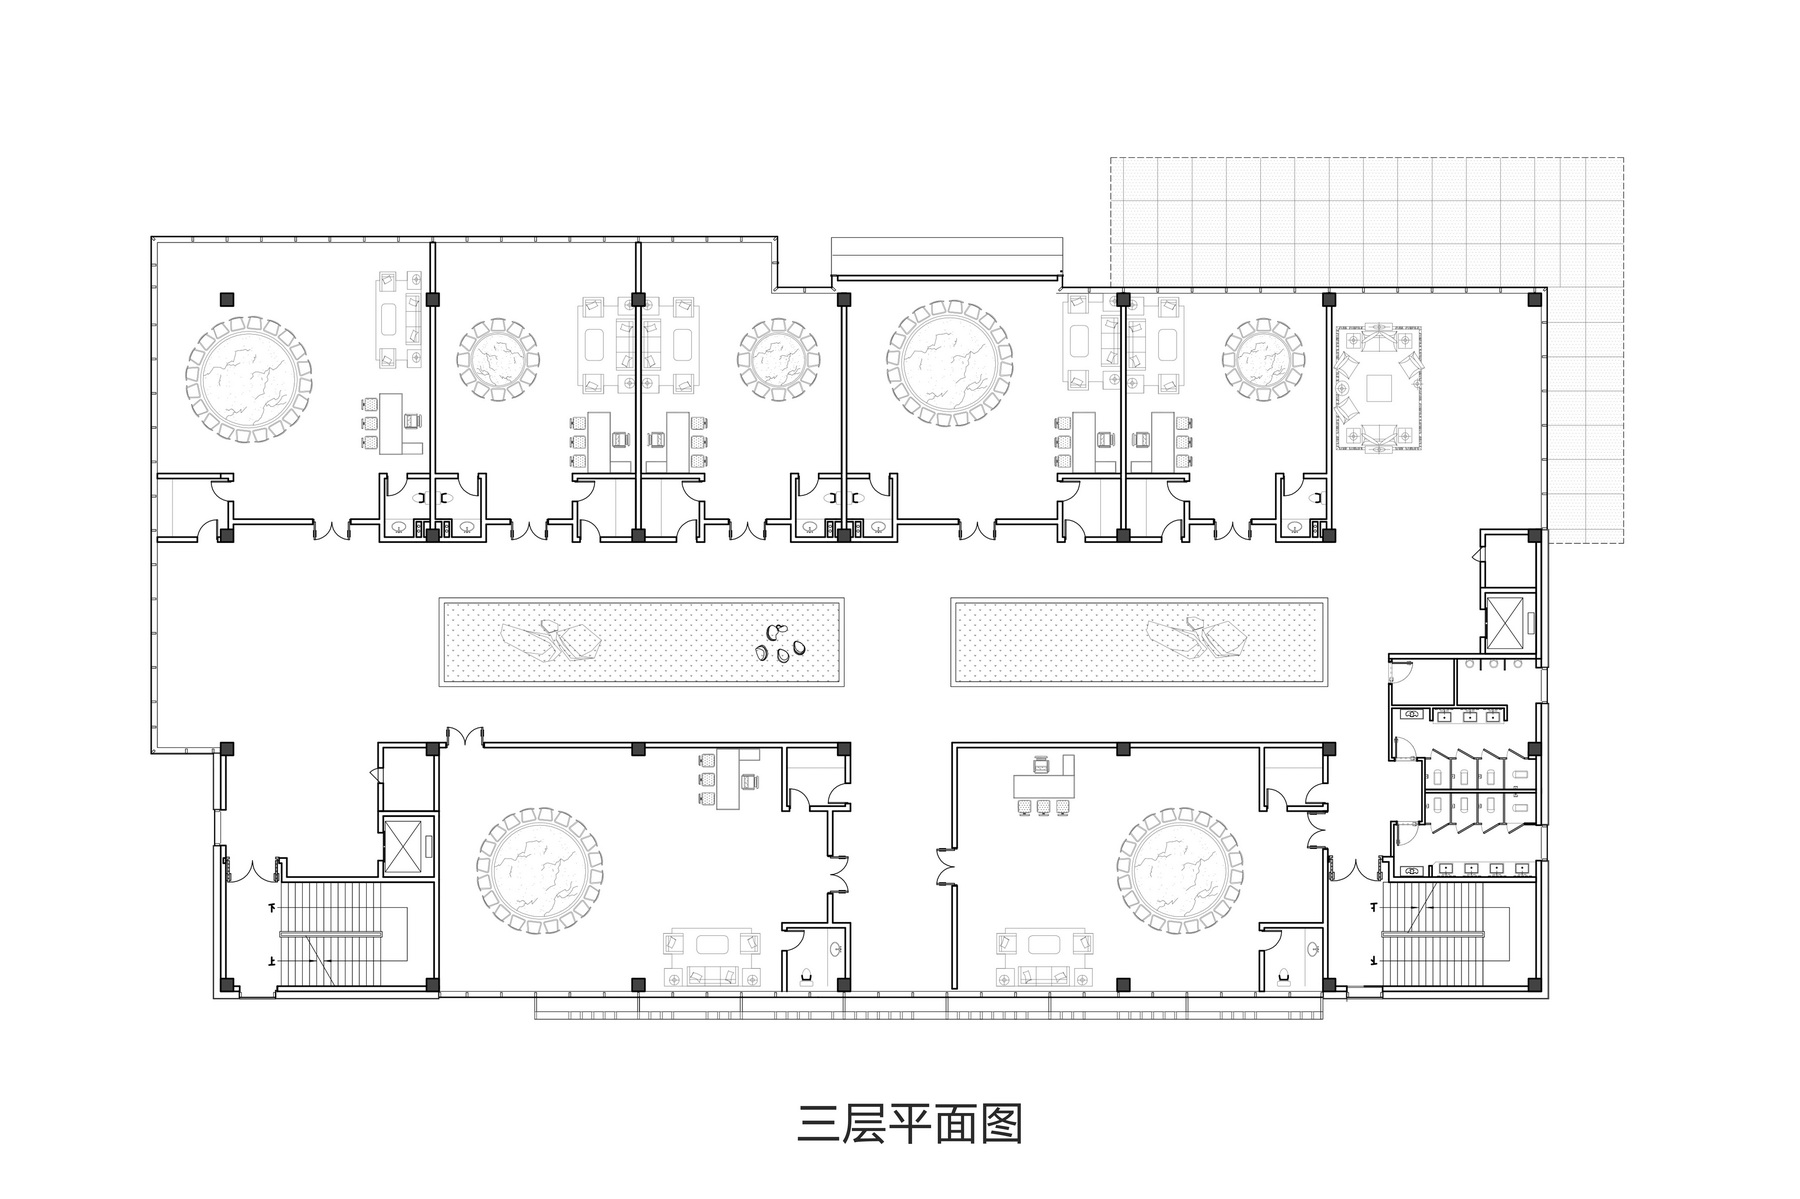 赣州嘉福新天地展示中心 建筑设计  / 森磊国际